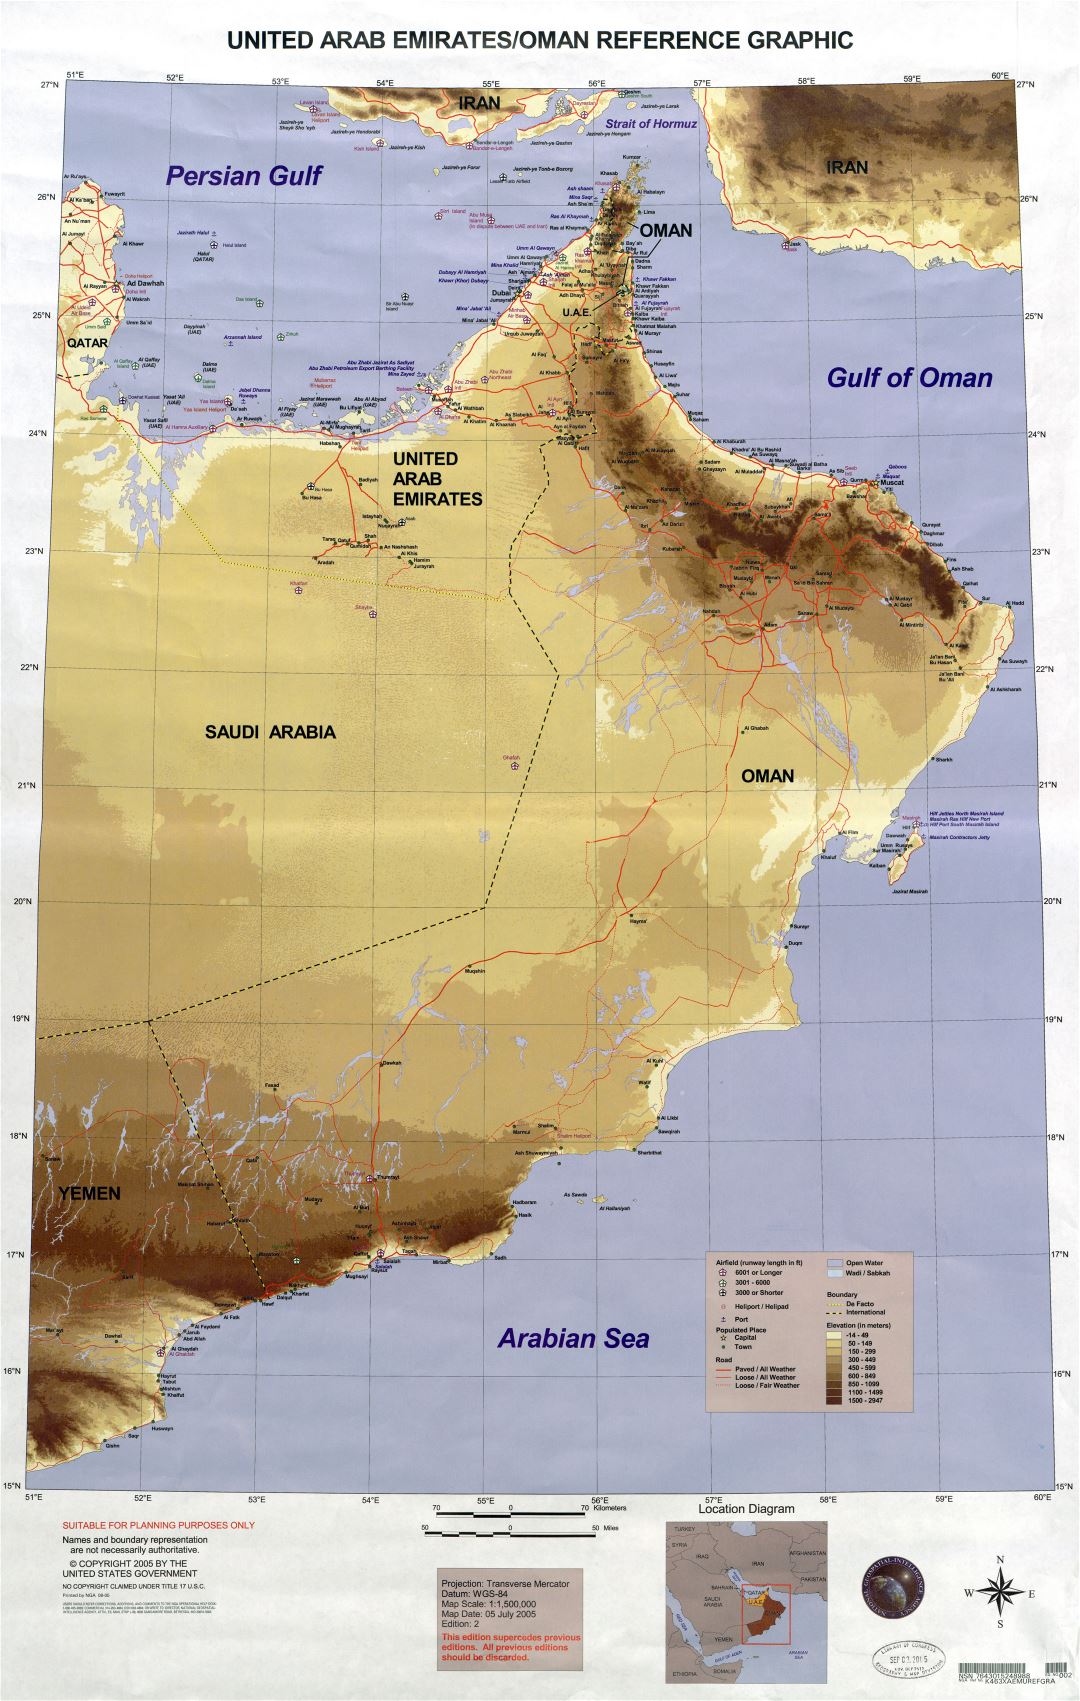 Grande detallado mapa de elevación de Emiratos Árabes Unidos y Omán con carreteras, todas ciudades, aeropuertos, helipuertos, puertos y otras marcas - 2005